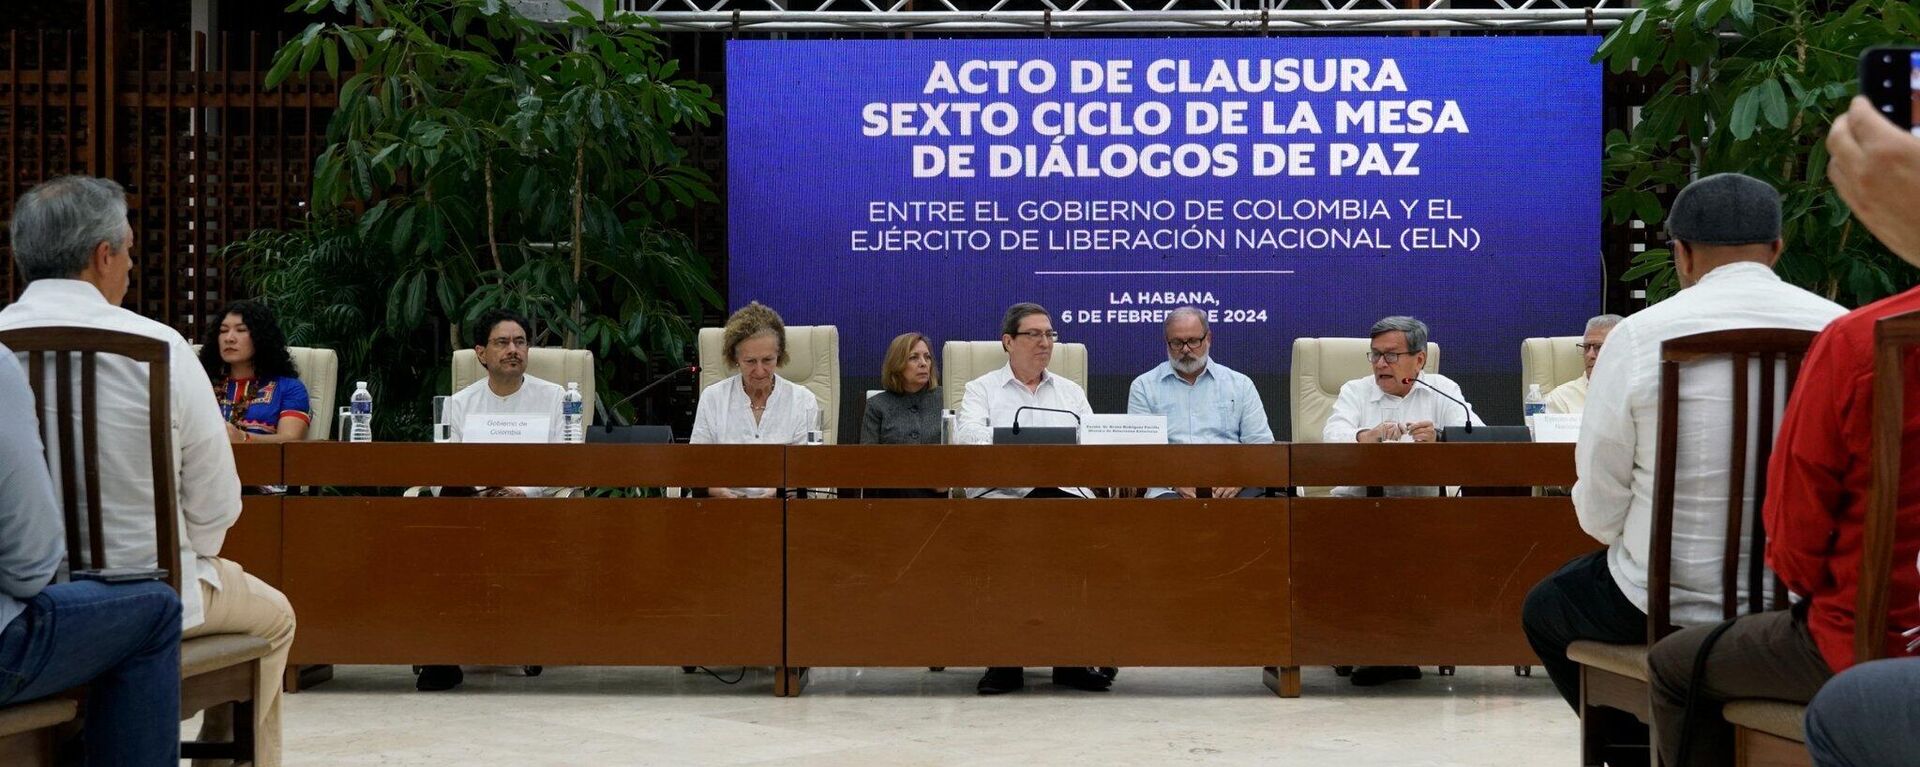 Concluye en Cuba sexto ciclo de Diálogos de Paz entre Gobierno de Colombia y guerrilla ELN - Sputnik Mundo, 1920, 06.02.2024